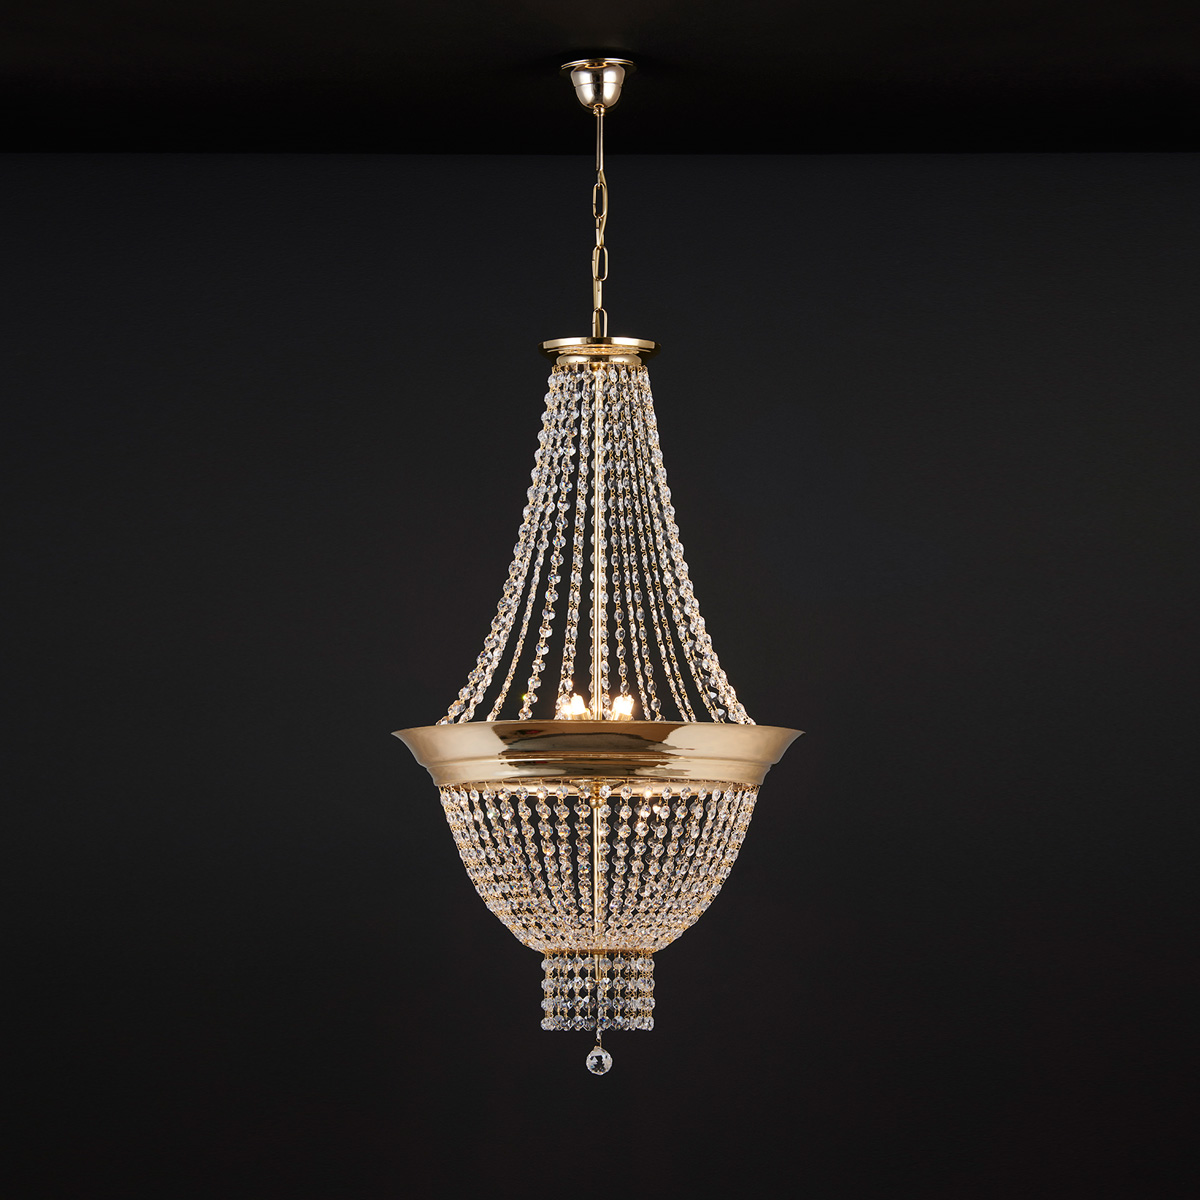 Κλασικό φωτιστικό με κρύσταλλα ΦΑΙΔΡΑ classic suspension lamp with crystal accents